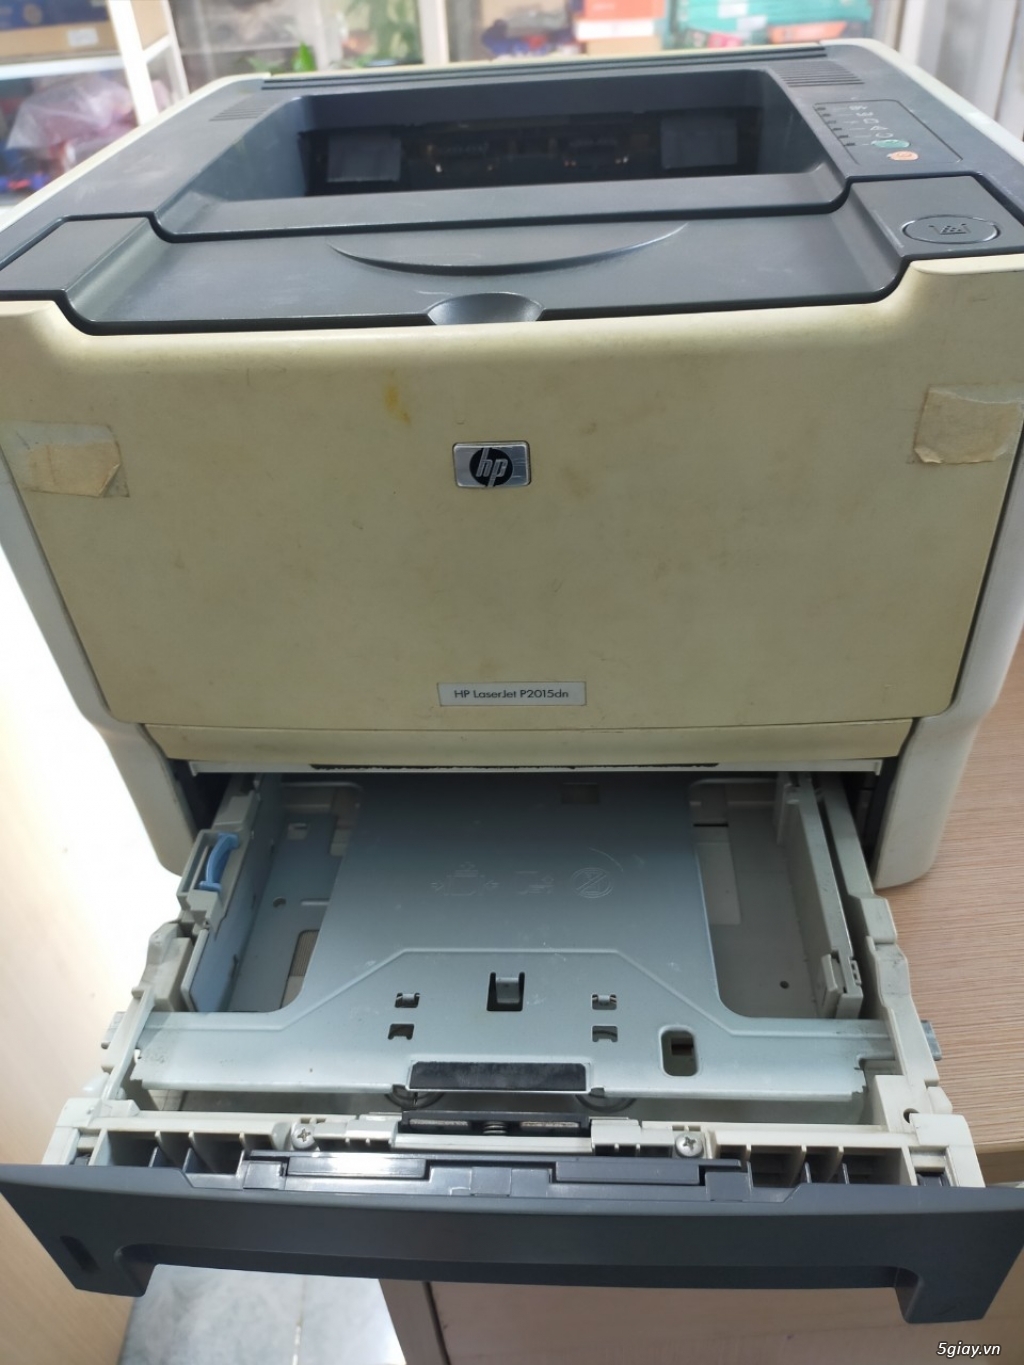 Bán thanh lý máy in 2 mặt HP P2015dn đang in bình thường giá rẻ - 2